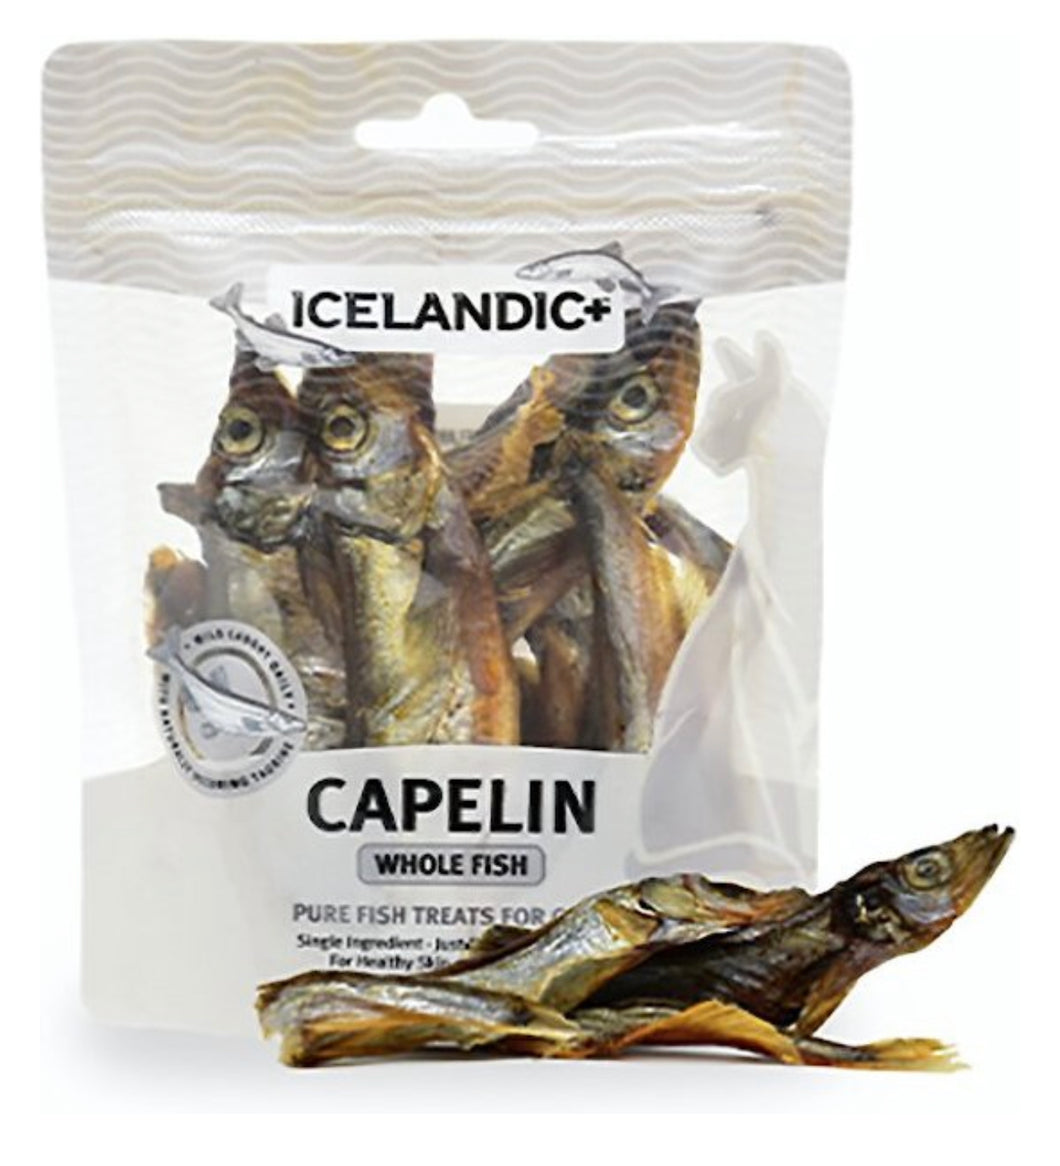 Icelandic Capelin